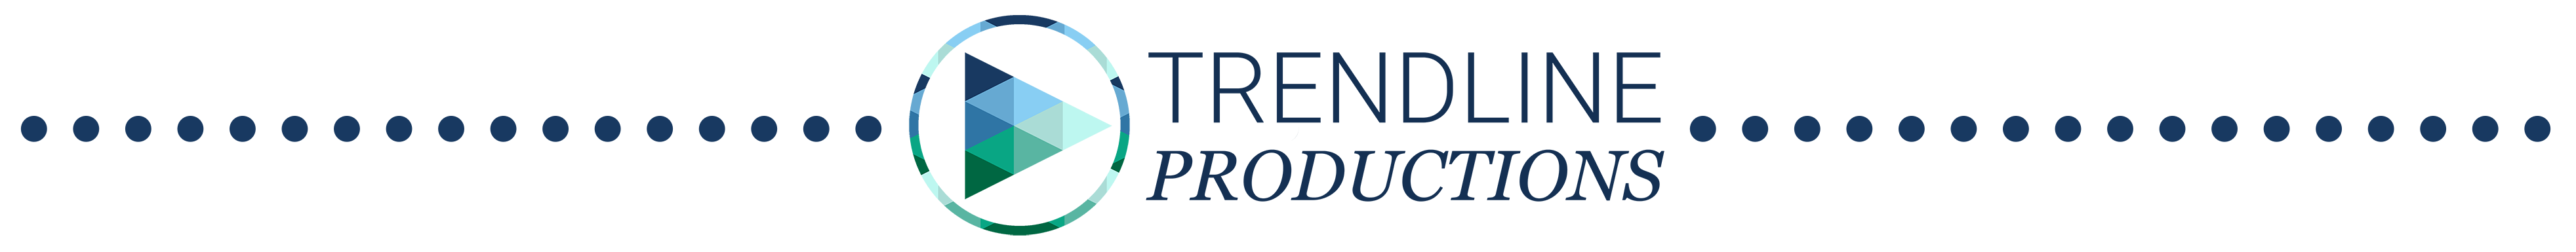 trendline productions